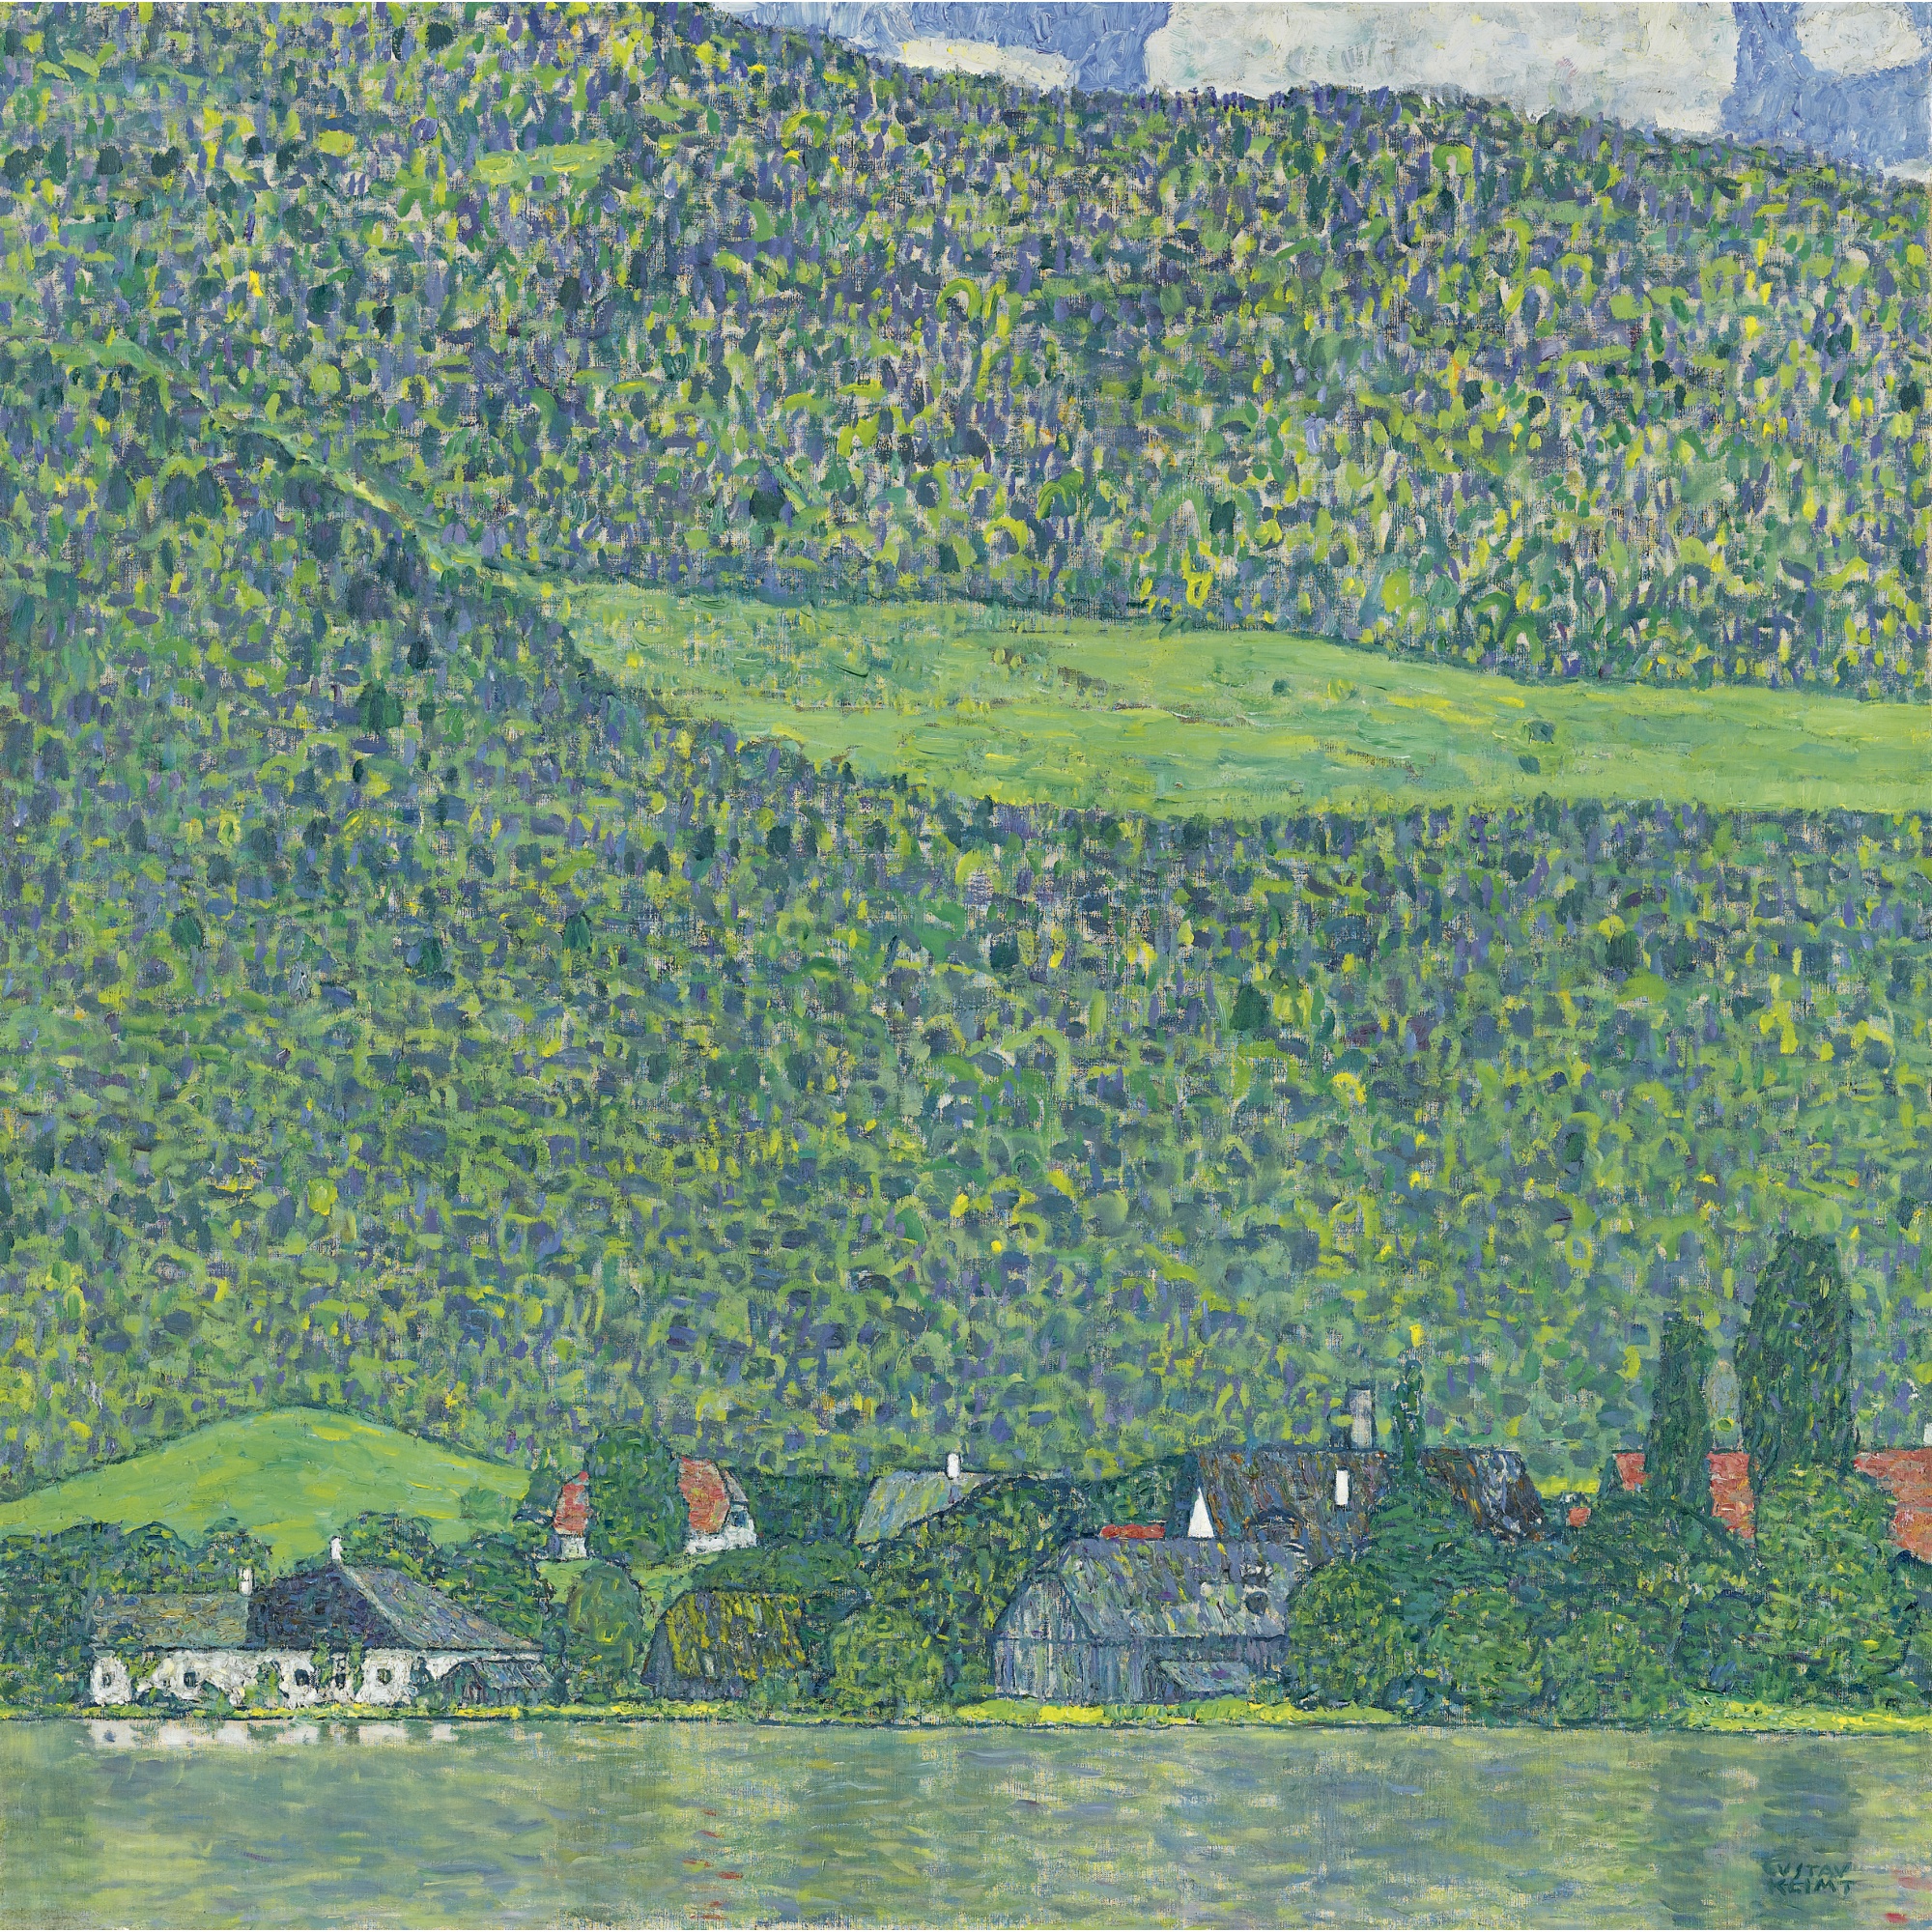 阿特湖畔的利茨尔贝格 by 古斯塔夫· 克林姆特画 - 1914-1915年间 - 110 × 110 cm 